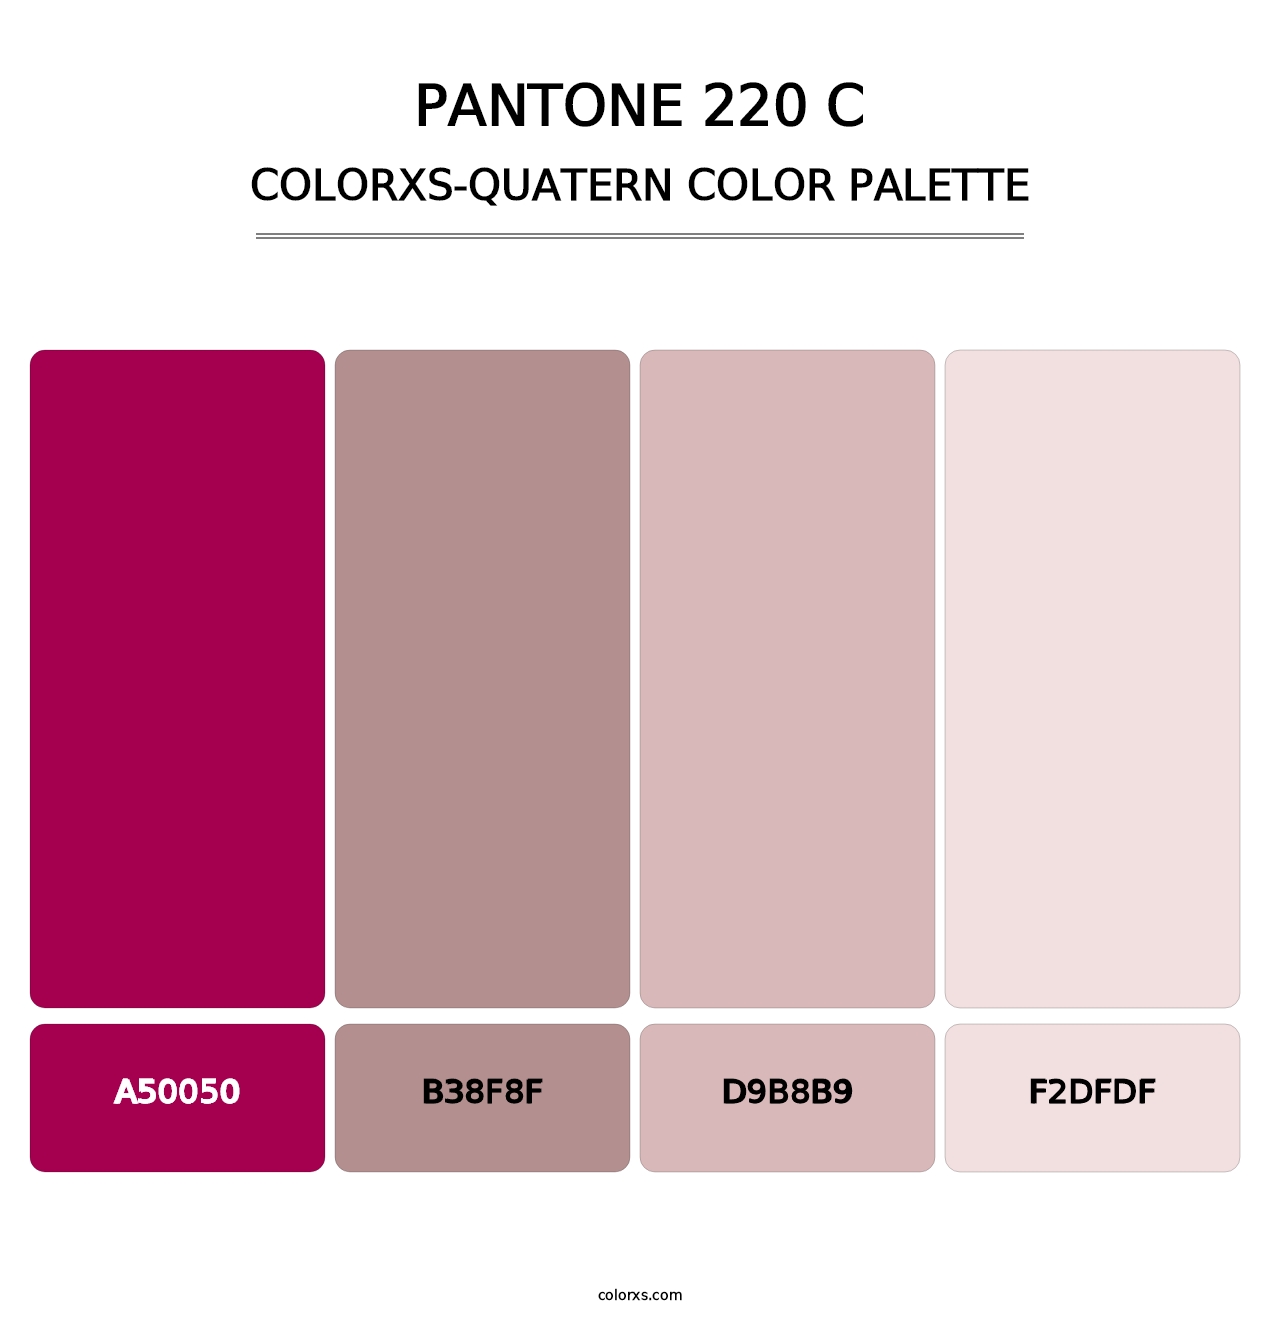 PANTONE 220 C - Colorxs Quatern Palette